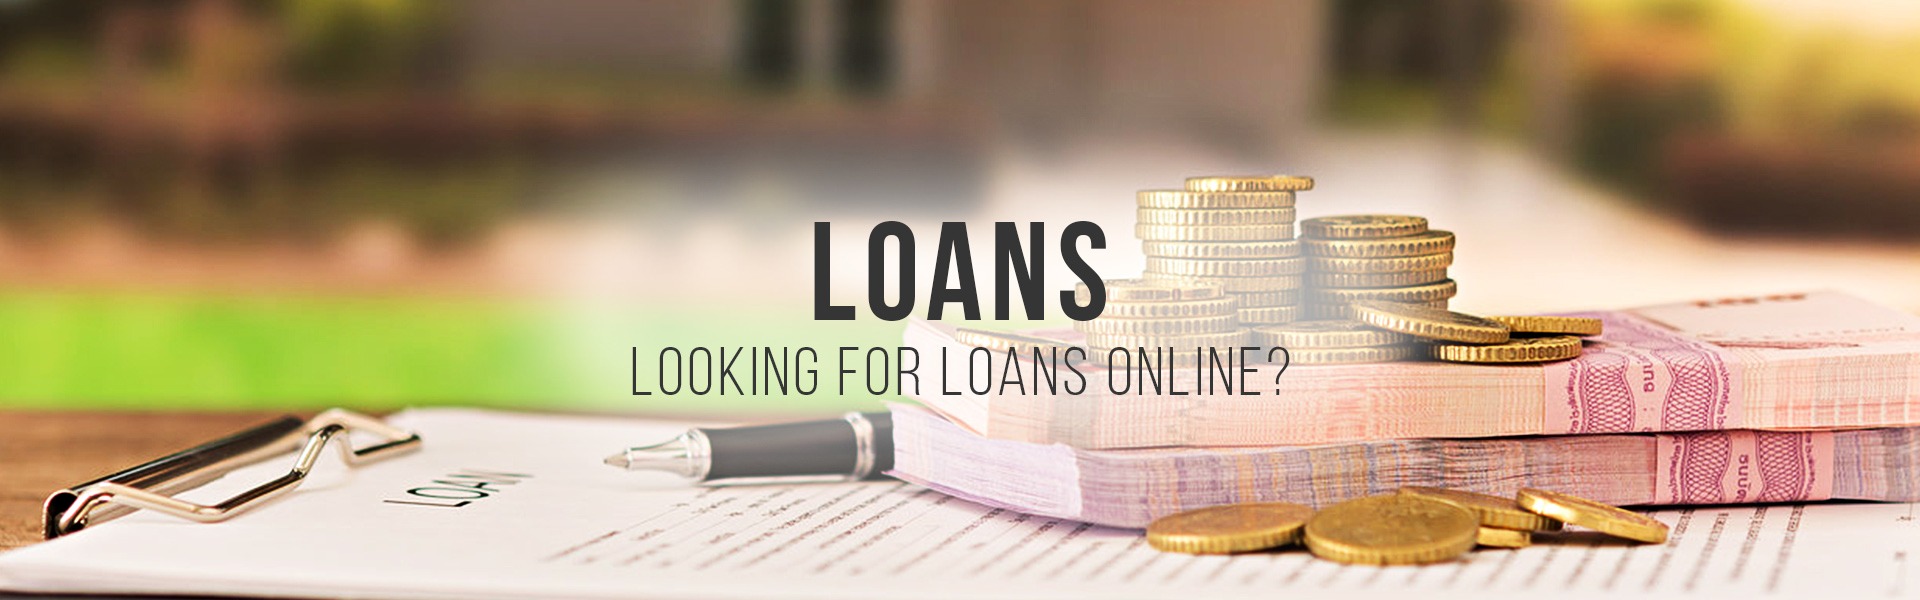 apply-for-loans-banner